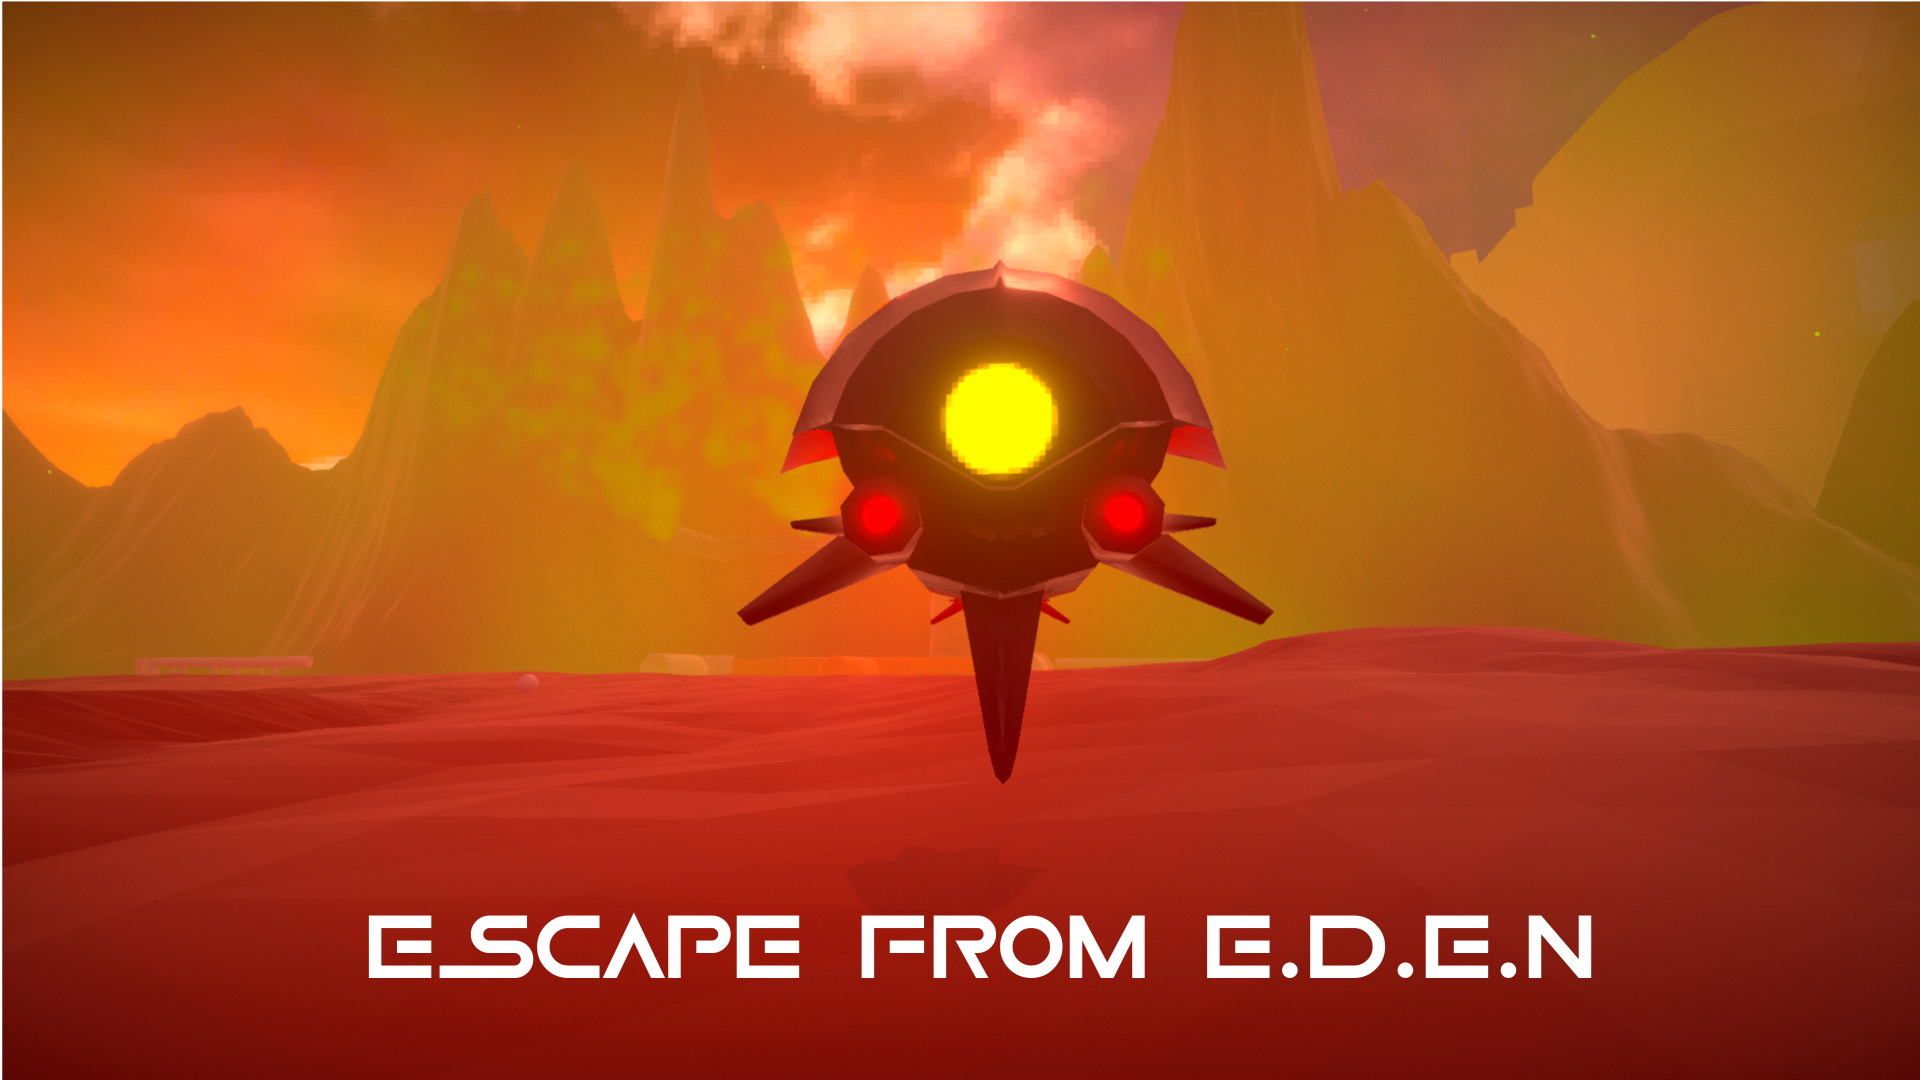 Escape From E.D.E.N